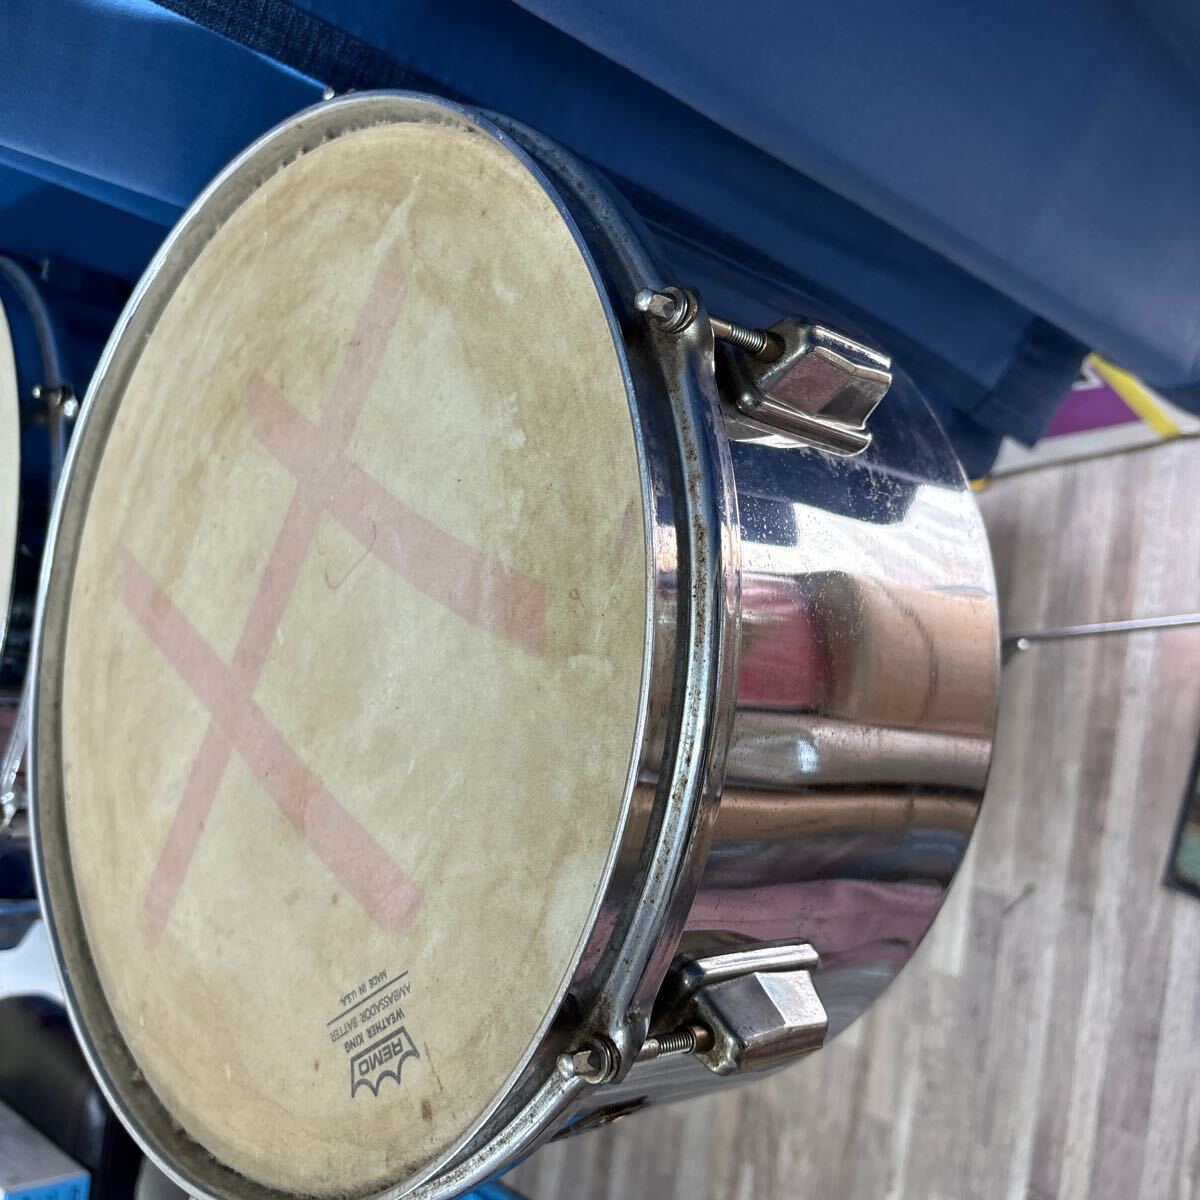 TA-765*Pearl барабан жемчуг REMO WEATHER KING AMBASSADOR BATTER futoshi тамбурин без тарелочек ударные инструменты подробности неизвестен 